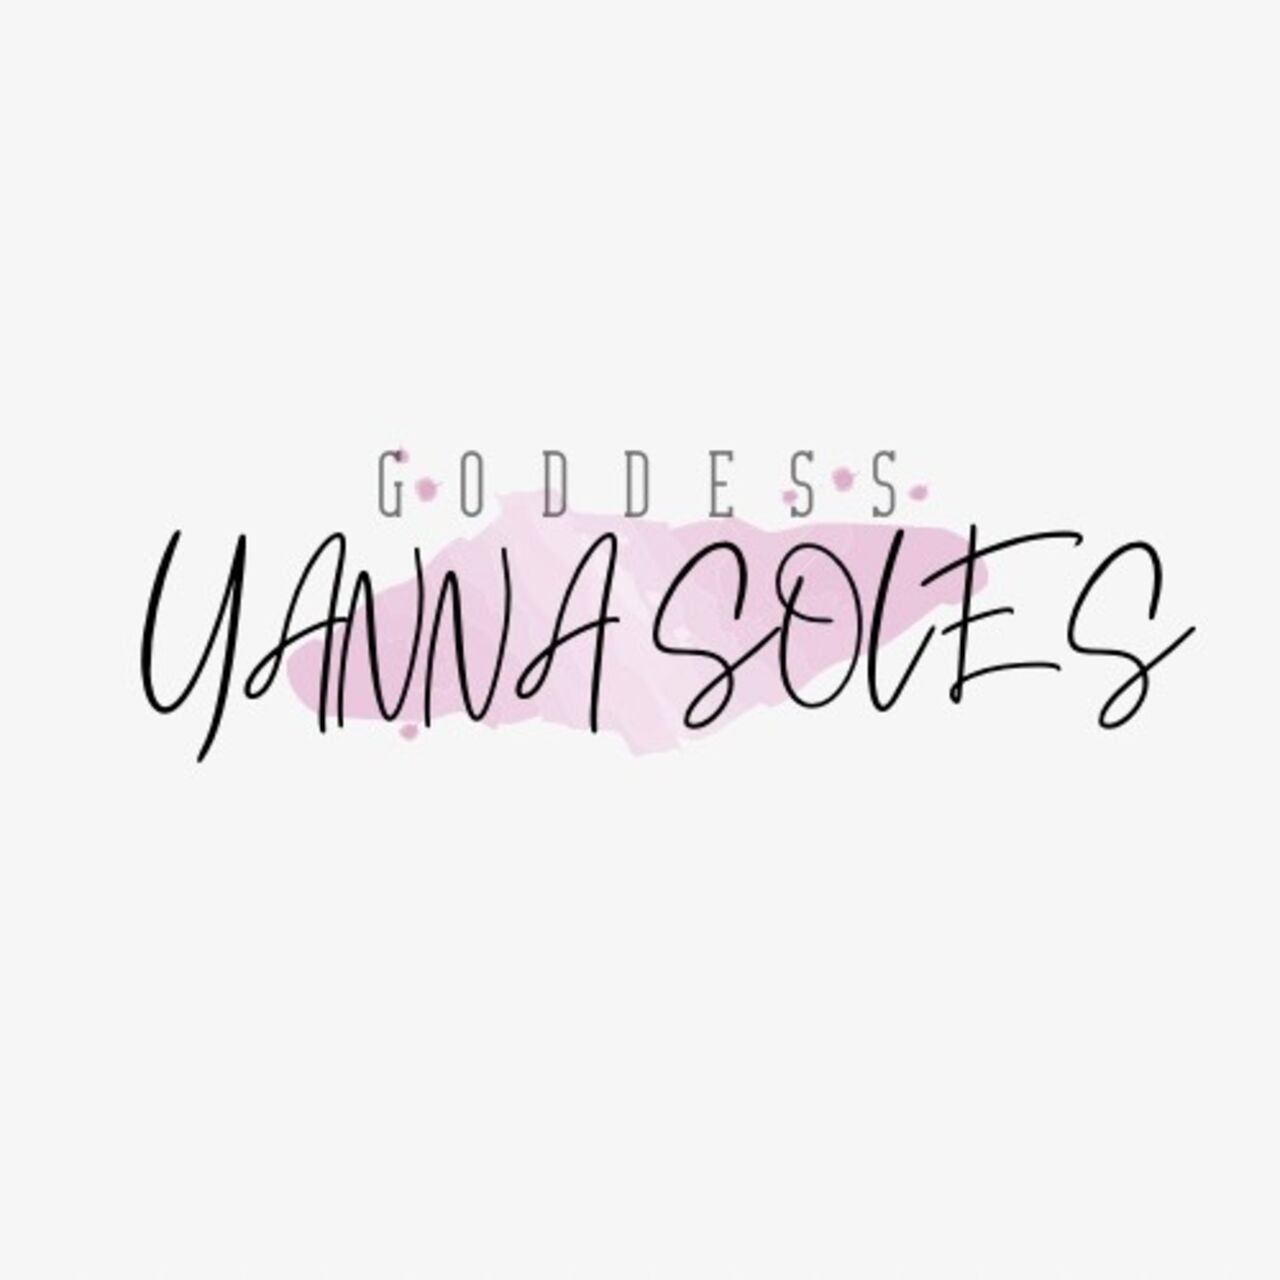 See Goddess Yanna 👑 profile